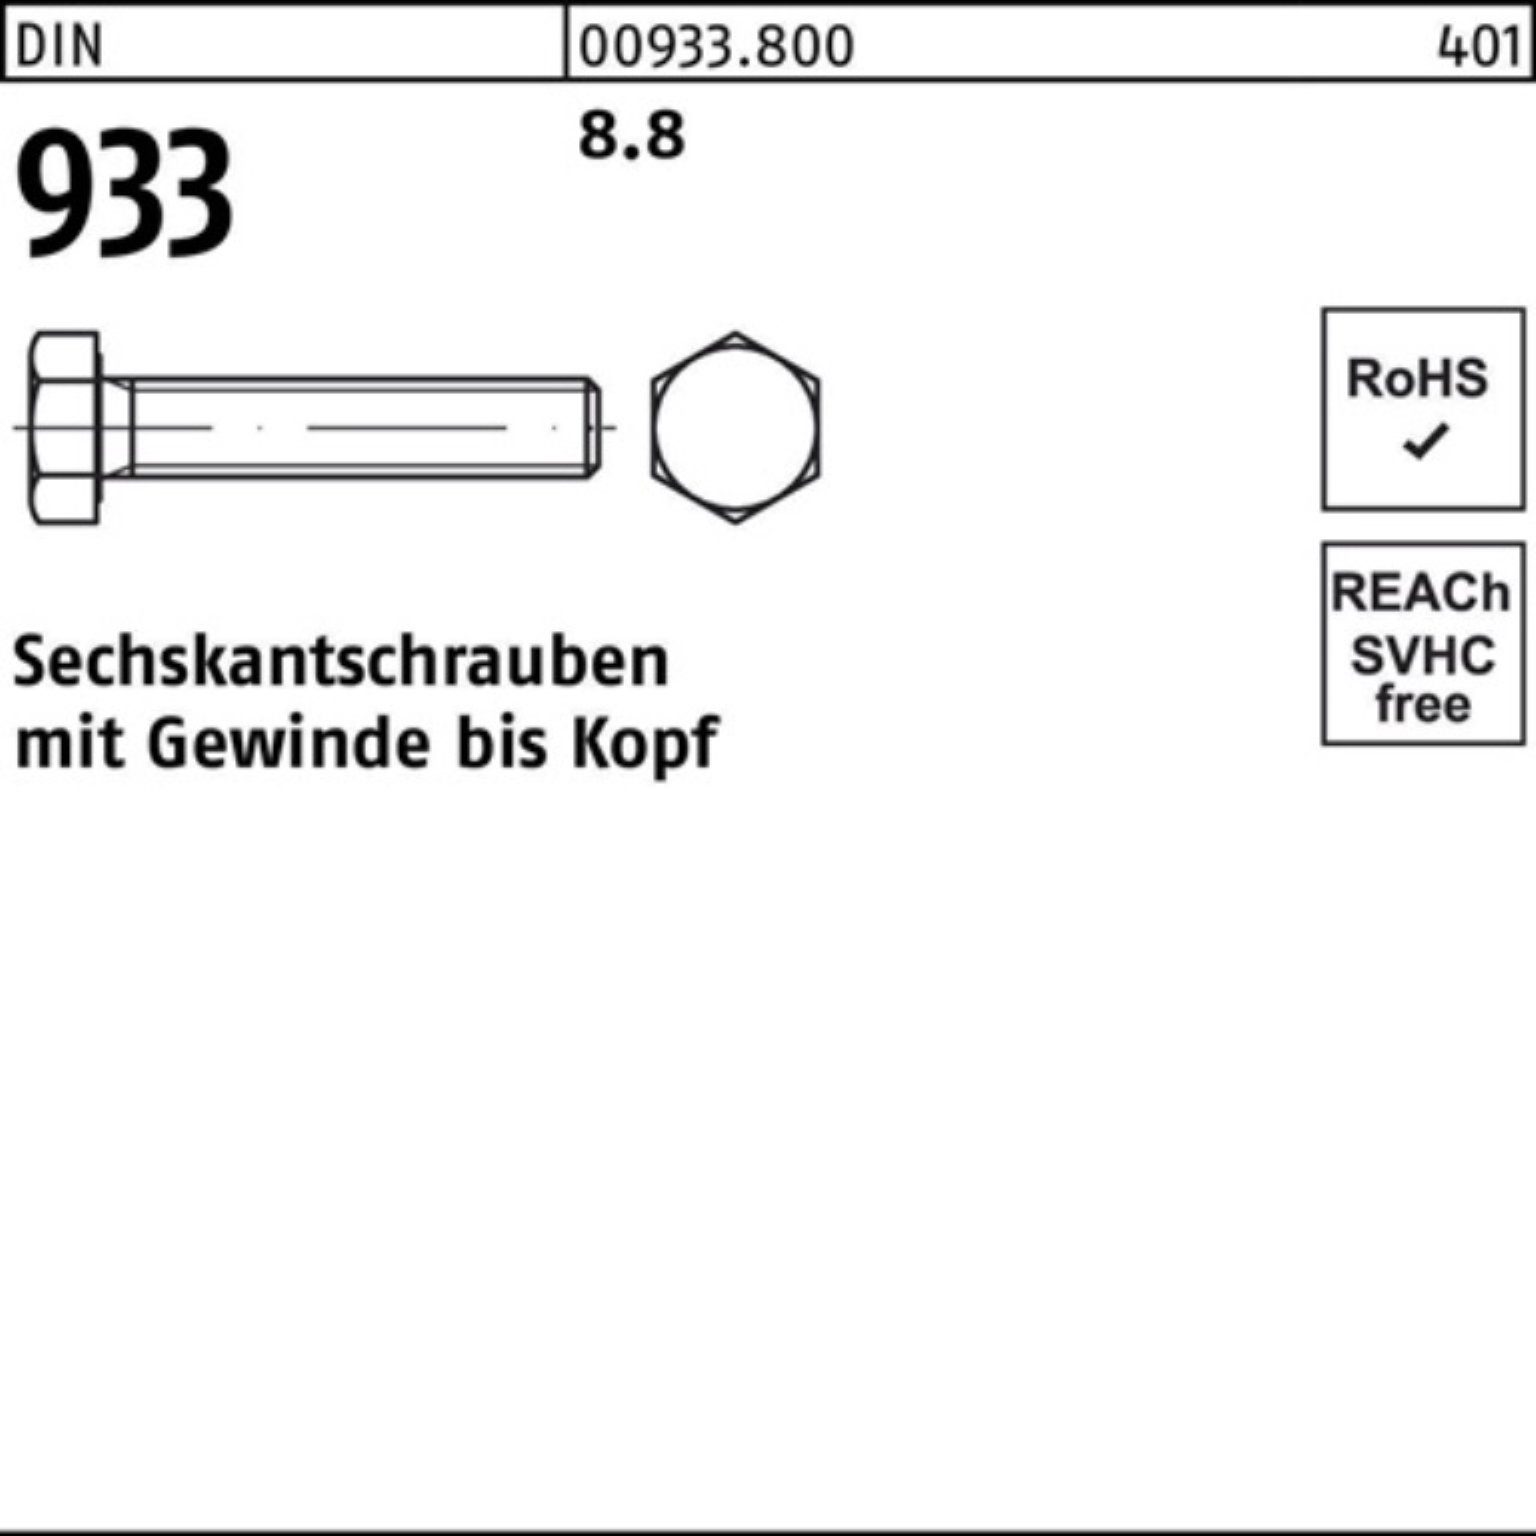 VG Sechskantschraube 10 160 Reyher Sechskantschraube 8.8 DIN Stück 100er 933 933 DIN Pack M22x